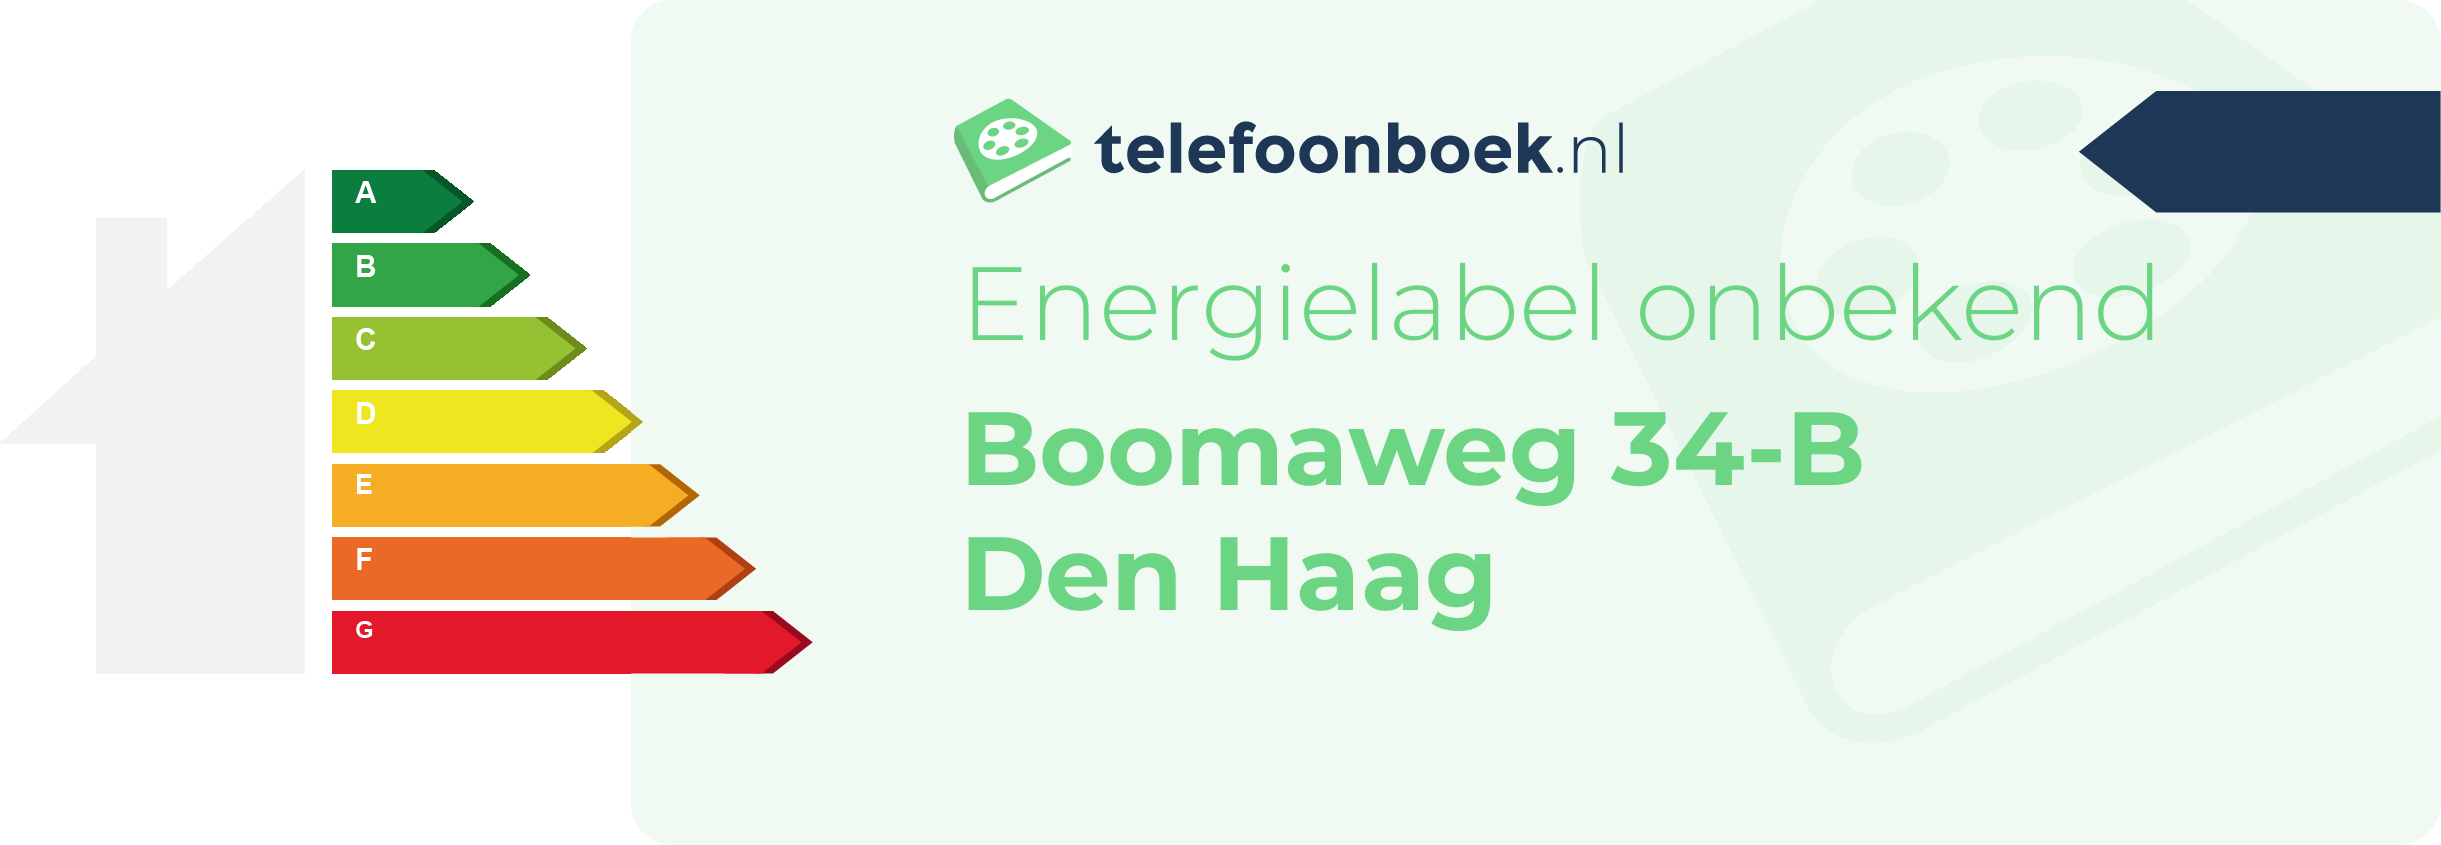 Energielabel Boomaweg 34-B Den Haag